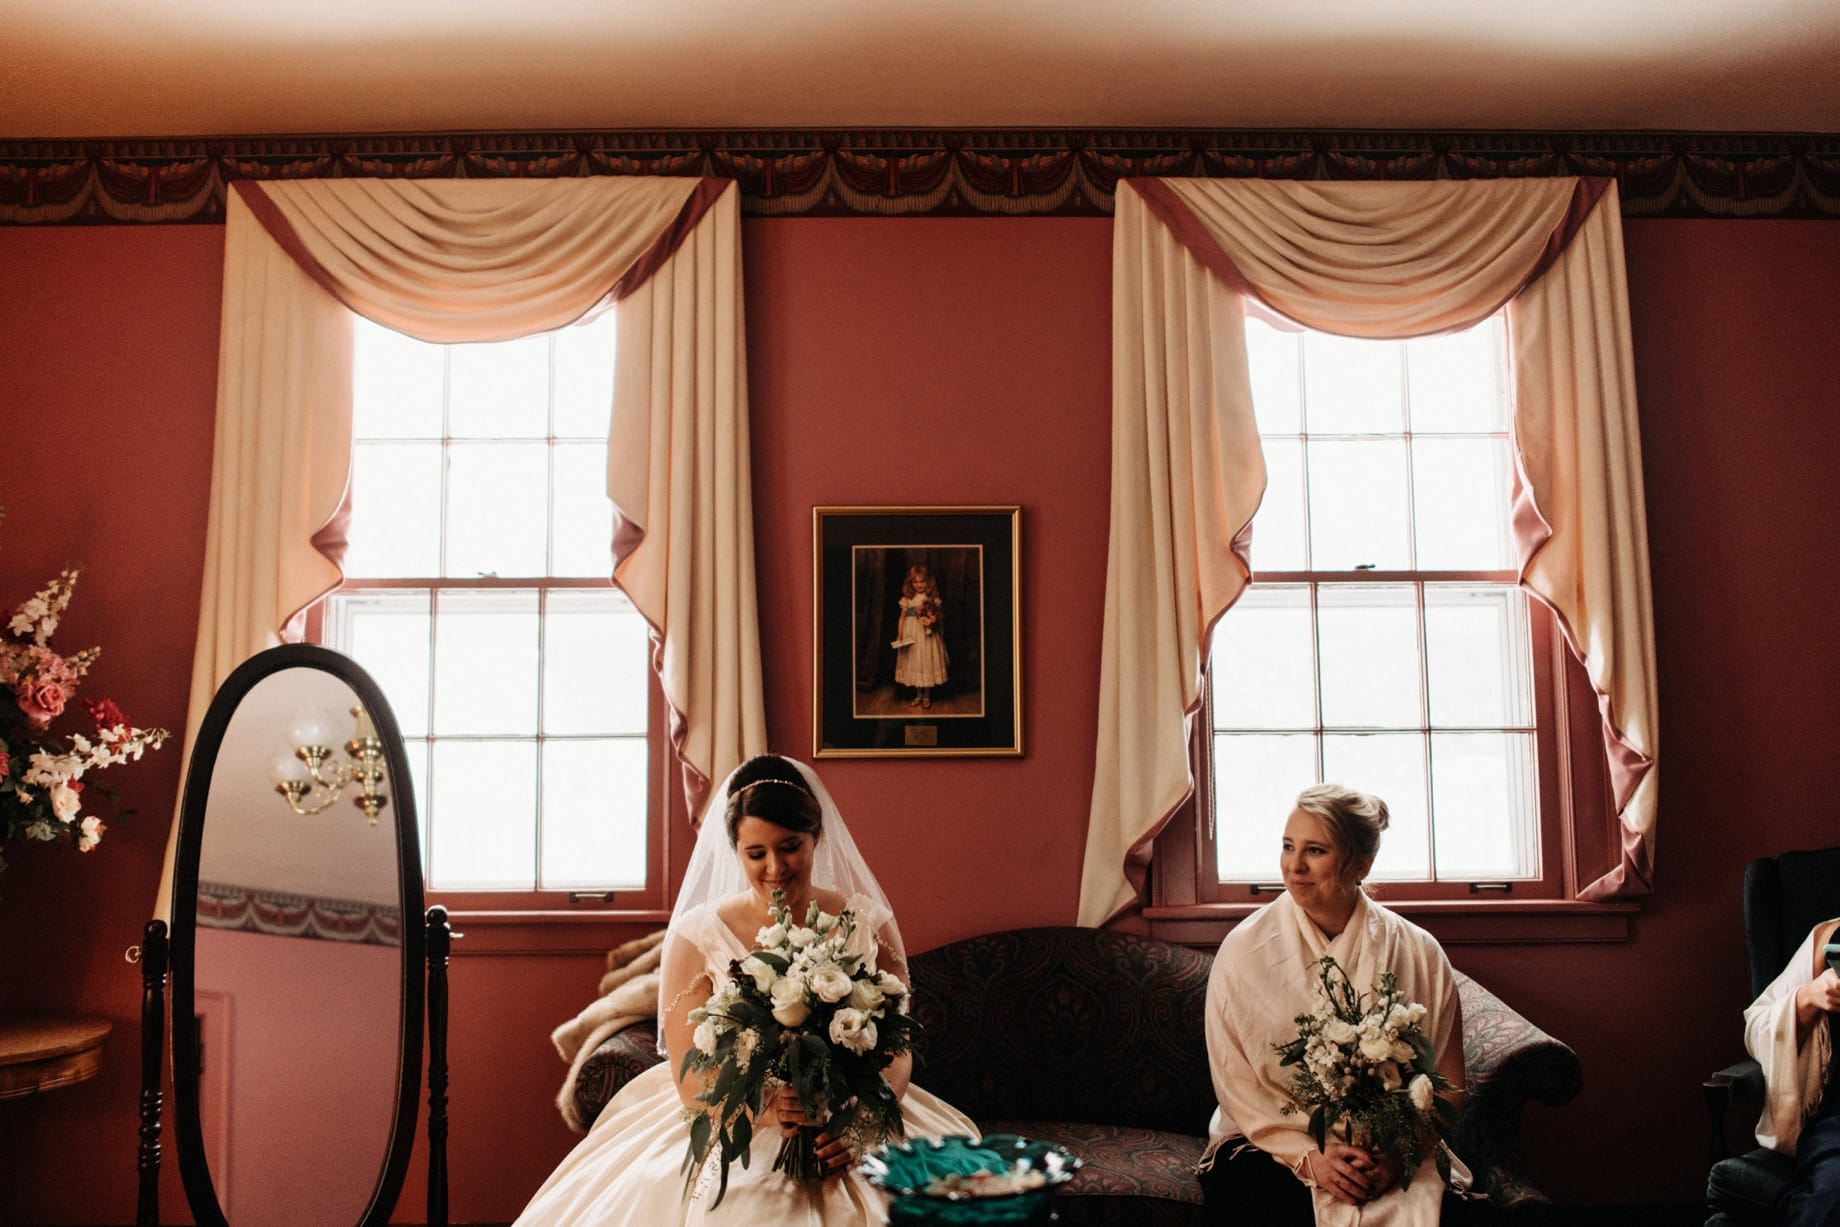 Candid Detroit Wedding Photographer Heather Jowett presents her Best of 2017